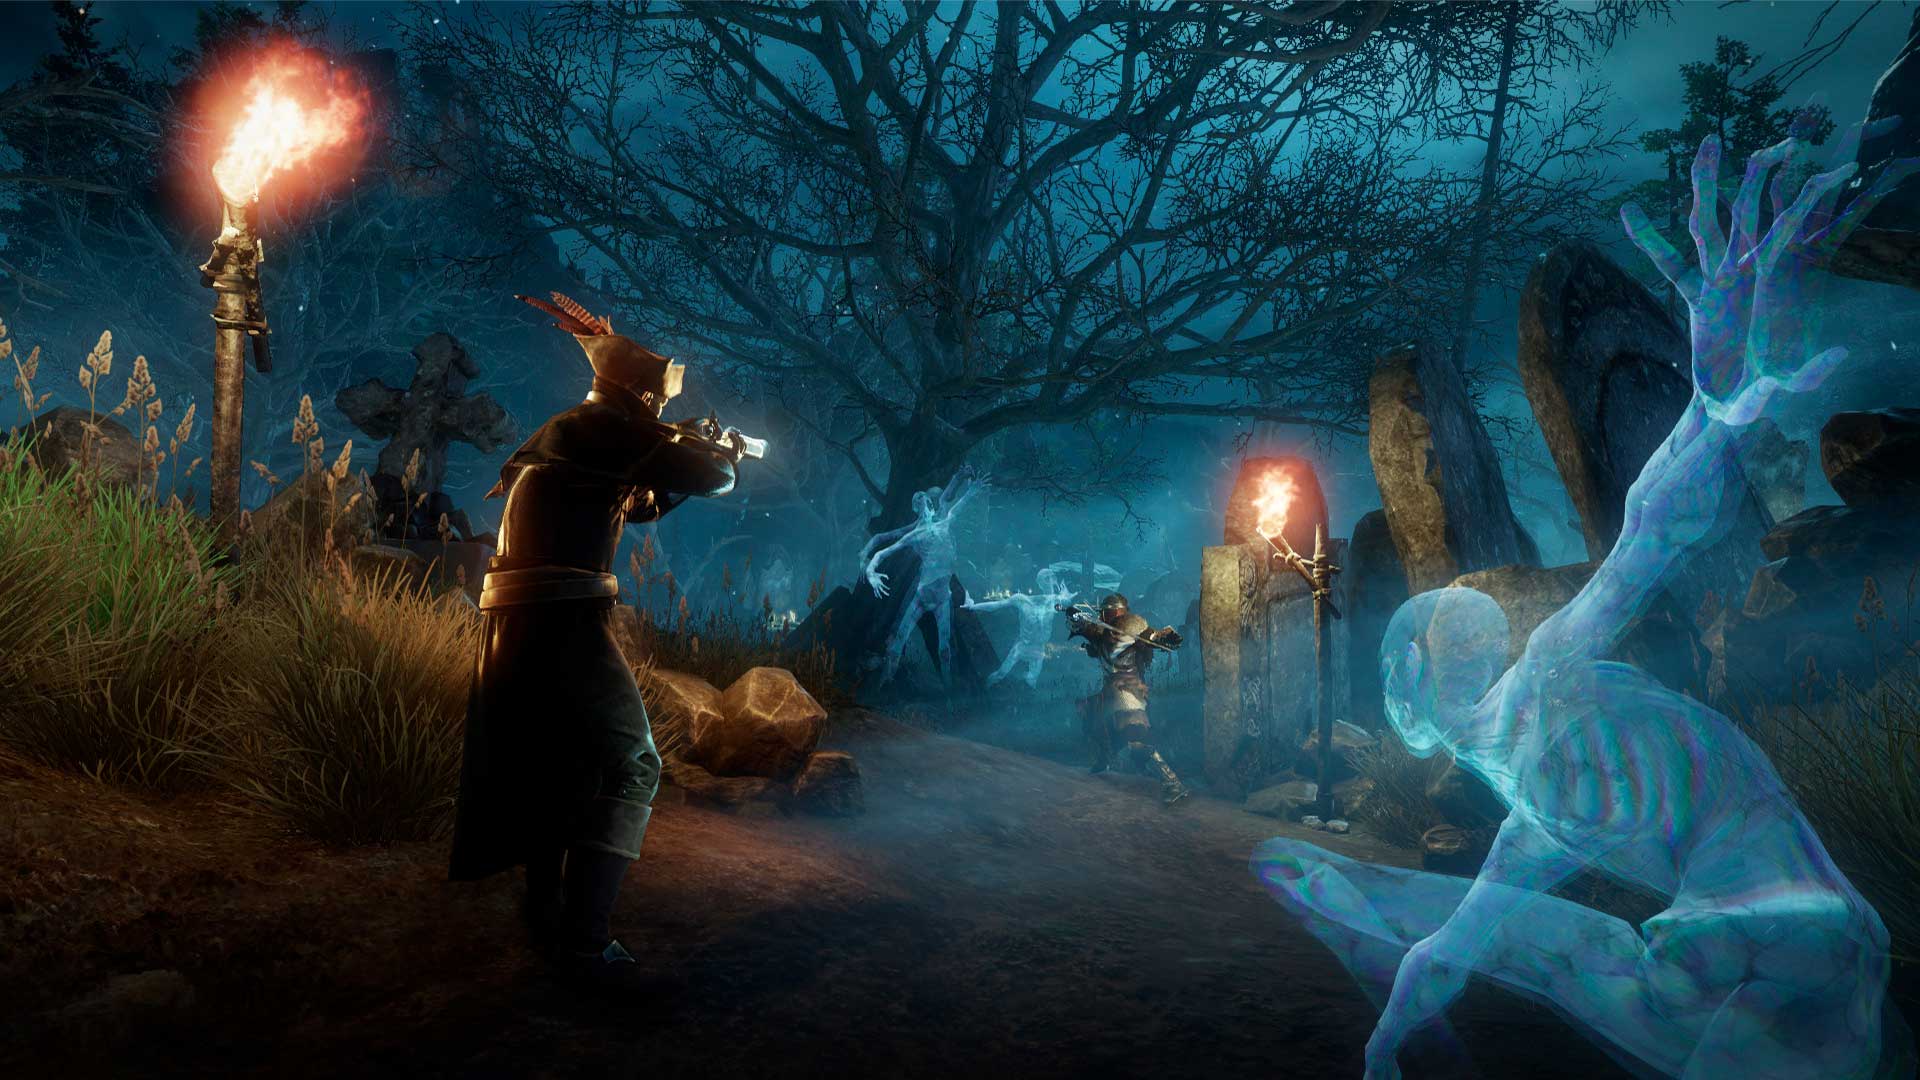 Ein Bild von Spielern der Neuen Welt, die Musketen auf einem Friedhof abfeuern.